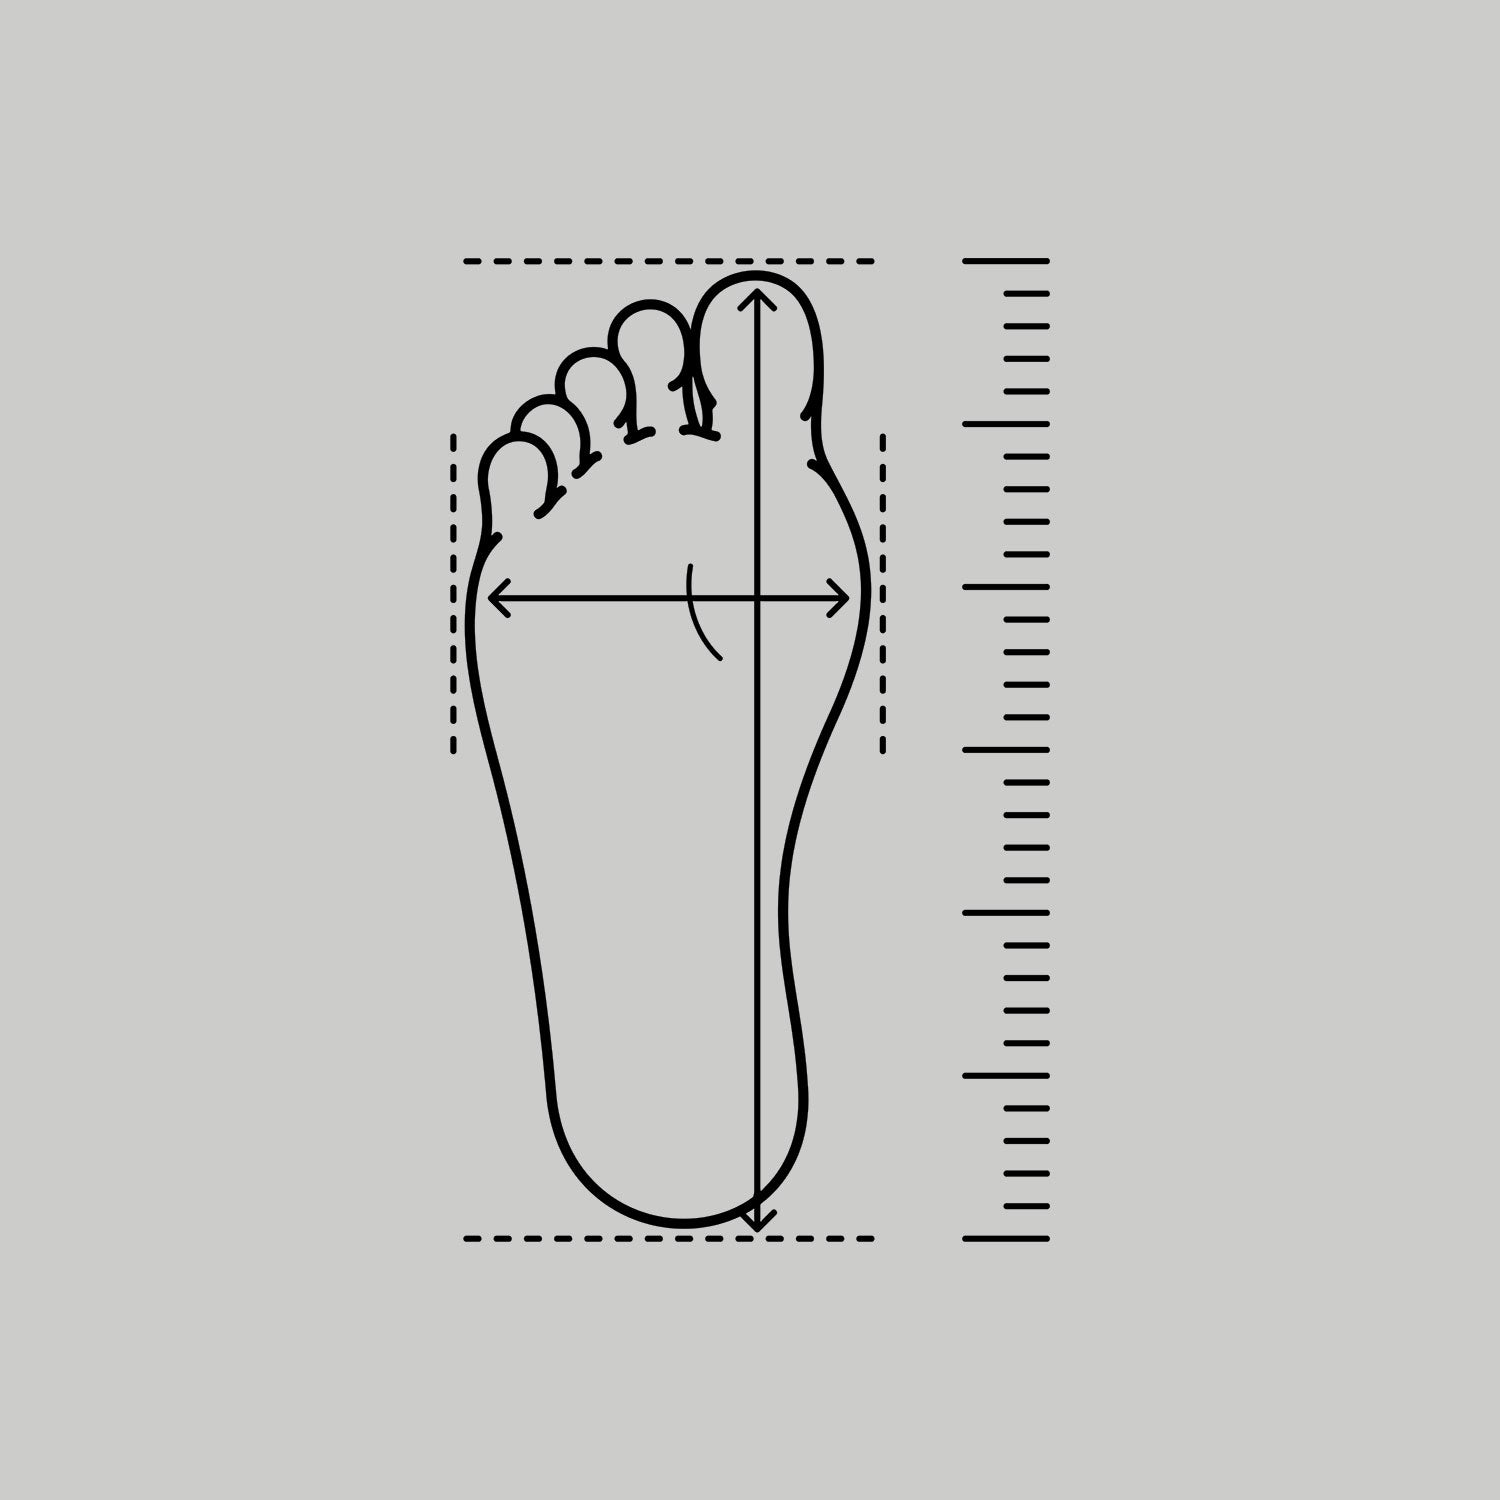 foot measuring diagram